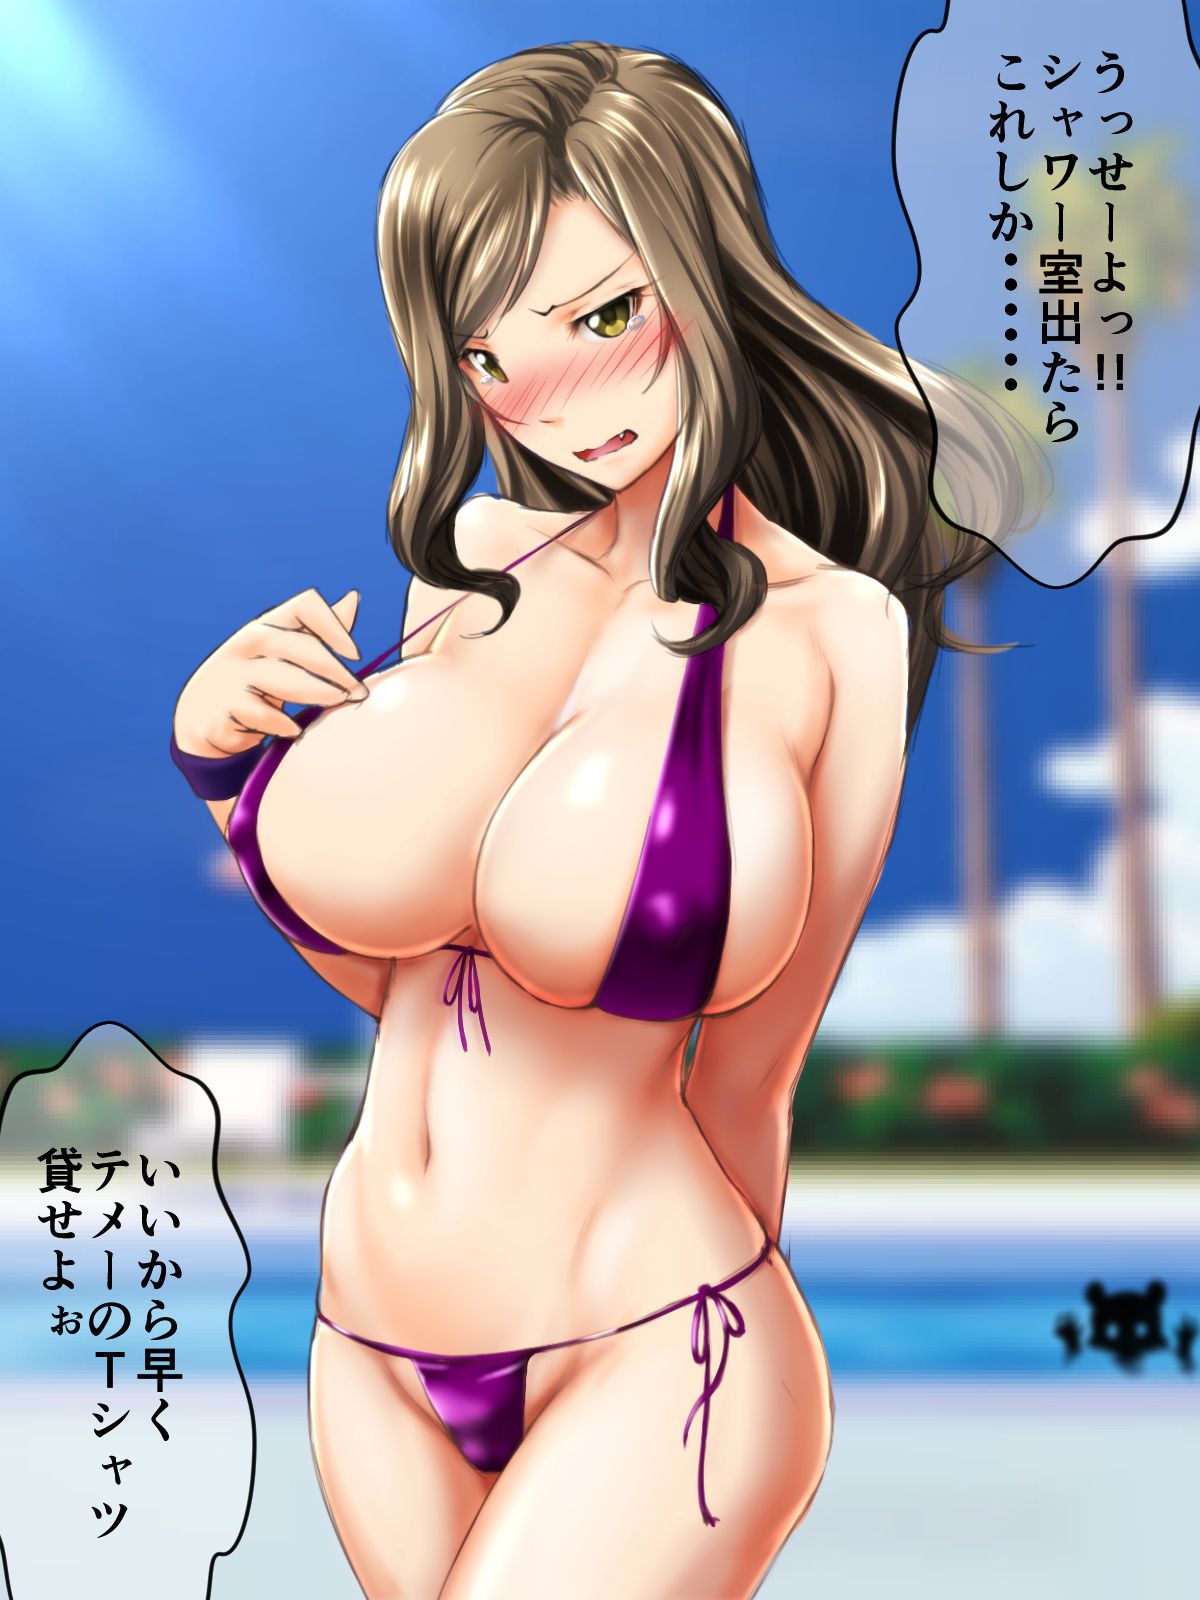 【Imus】Mukai Takumi's Erotic Images Part 3 11